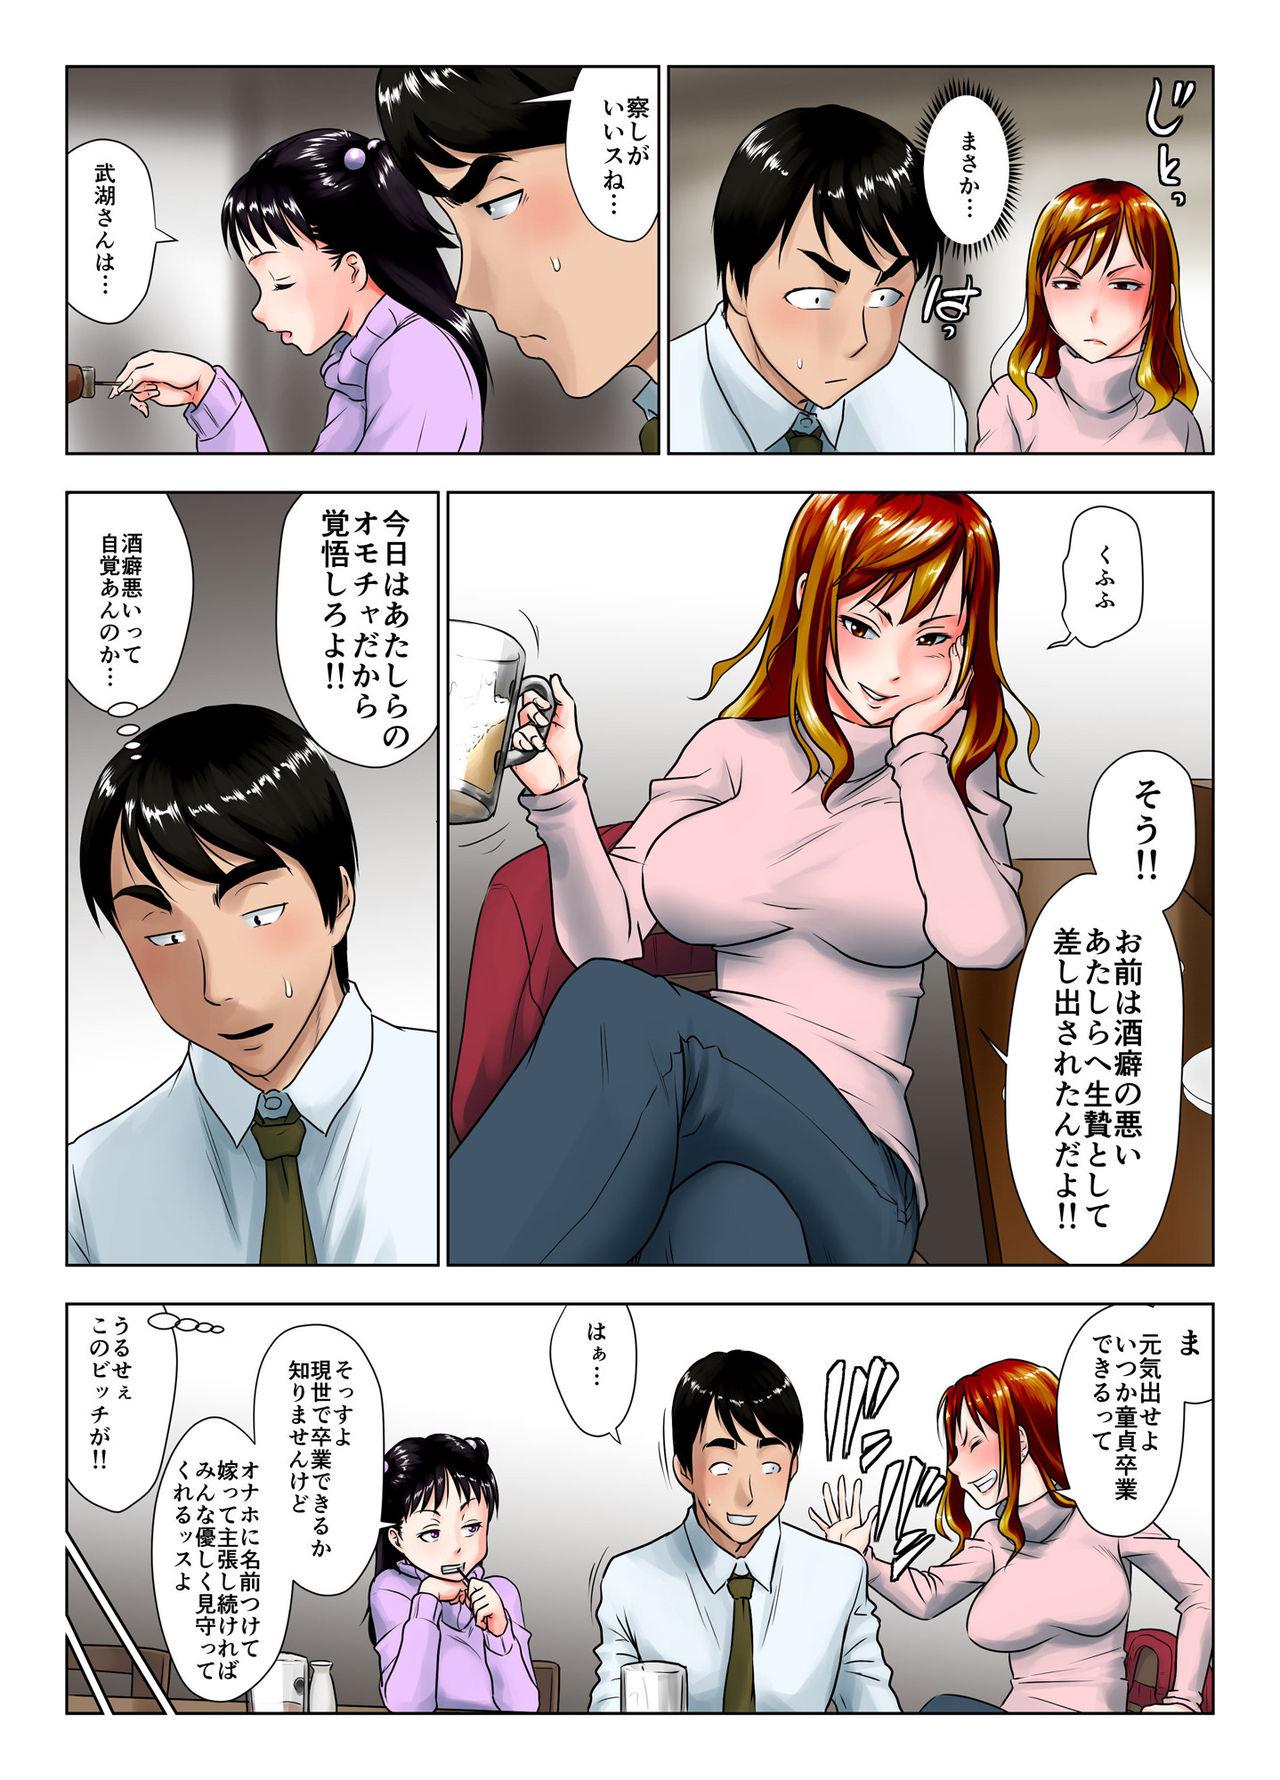 Threesome Kore wa Yoi Anego desu ka? Work - Page 4